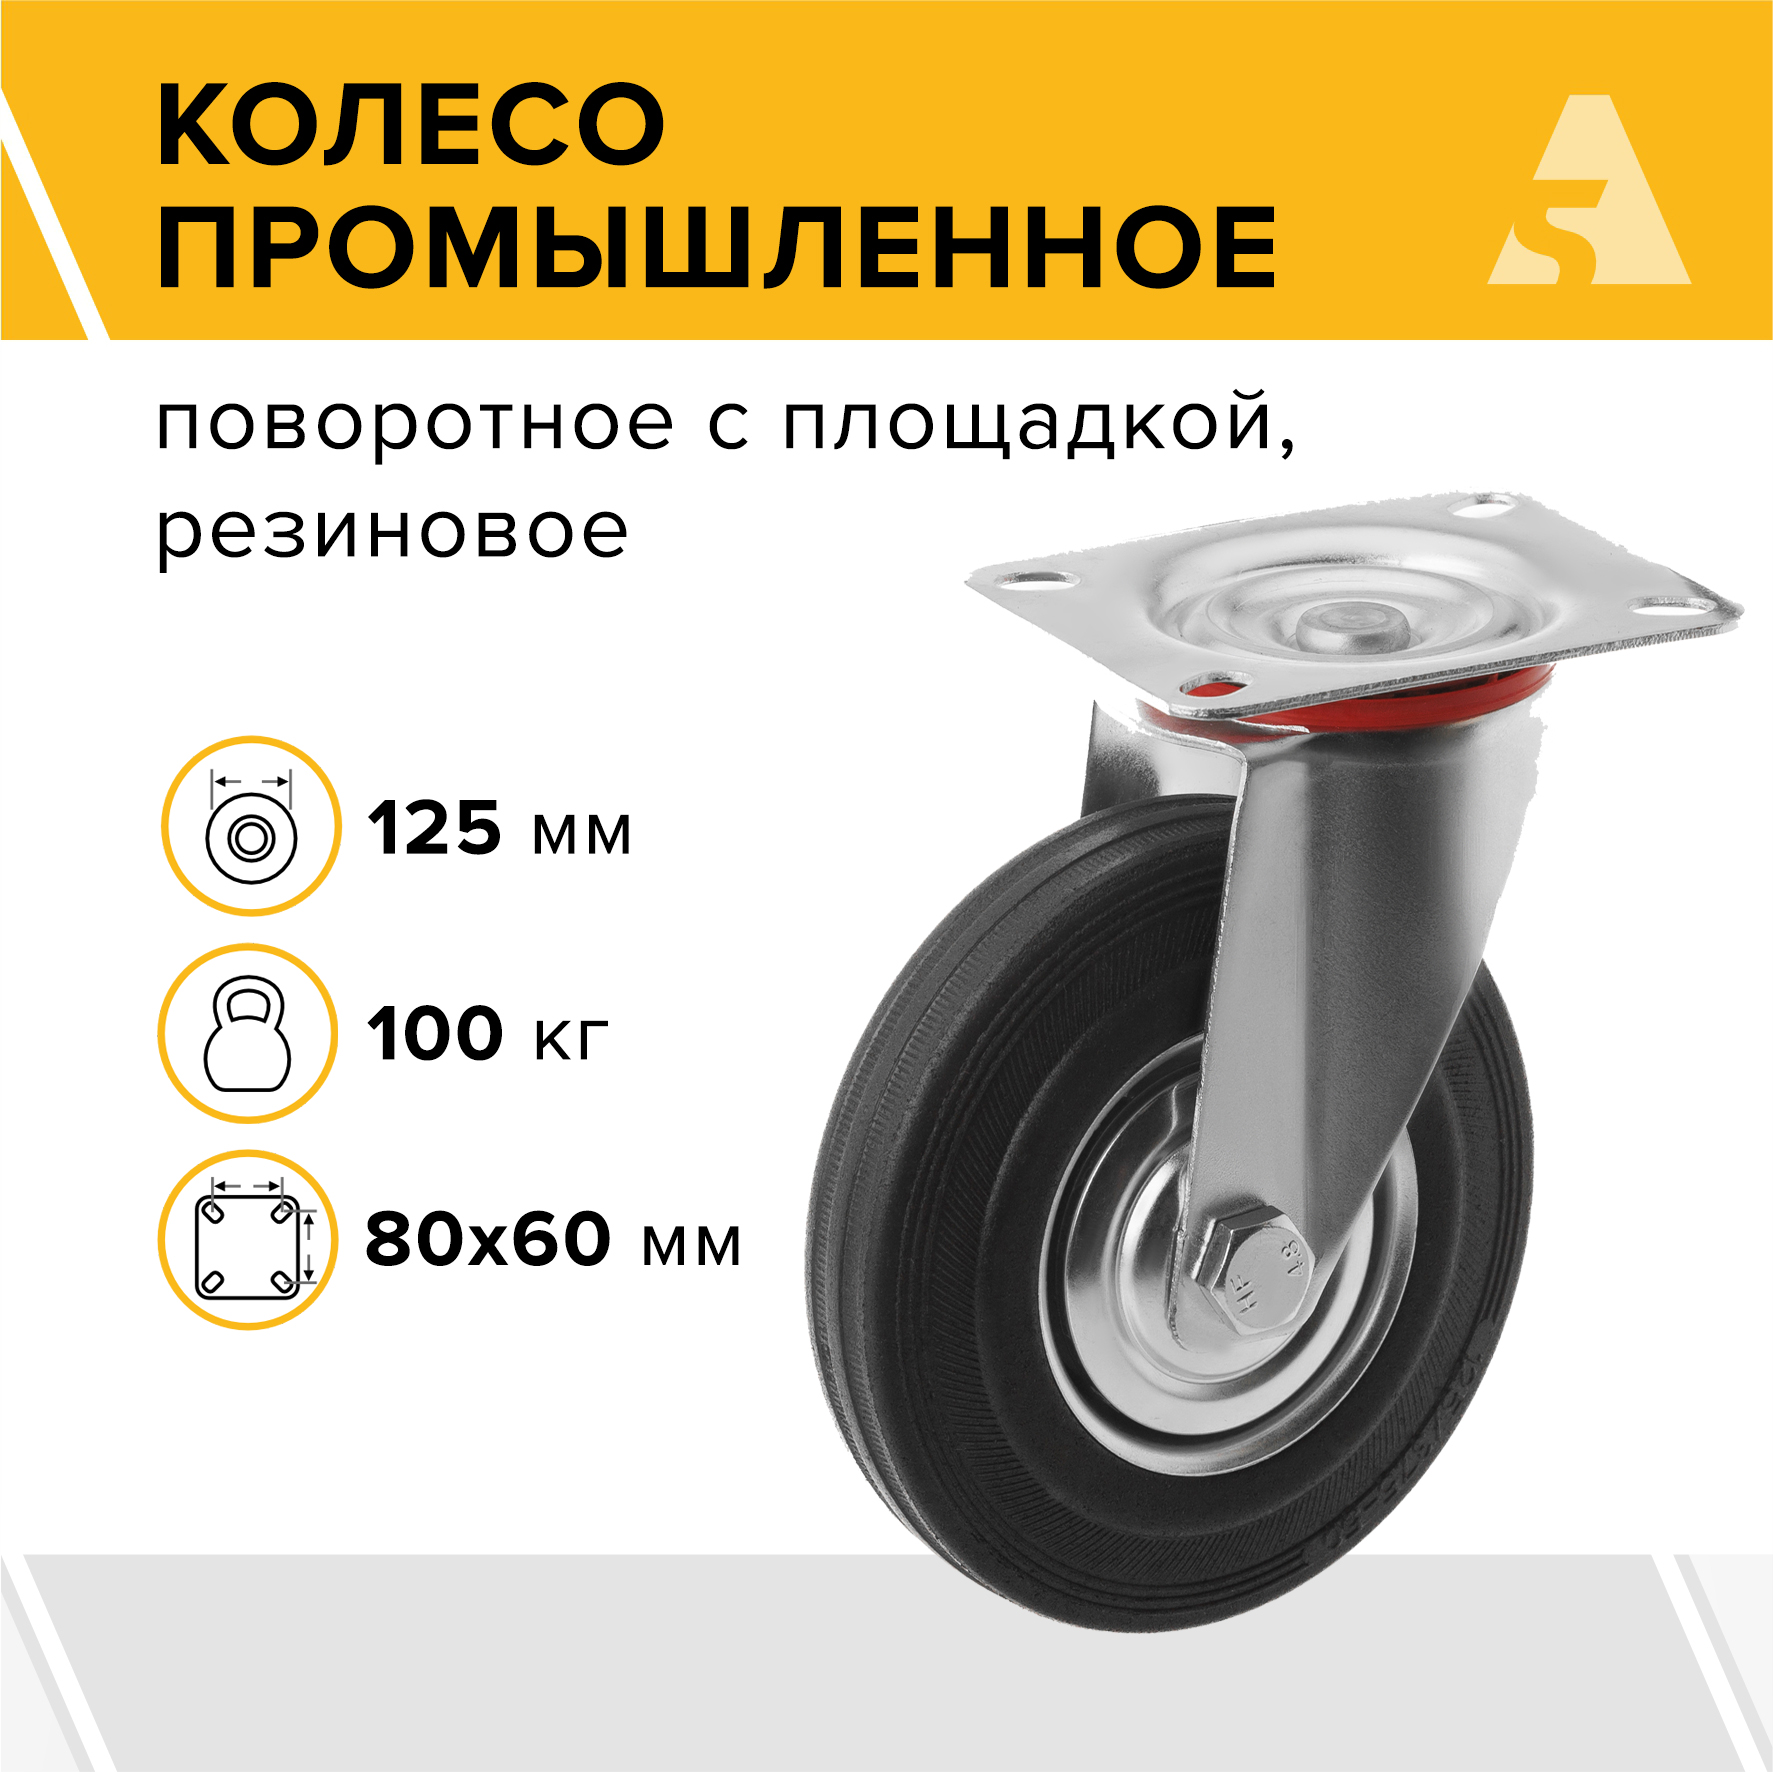 Колесо промышленное А5 SC 55 1000009 усиленное промышленное поворотное колесо а5